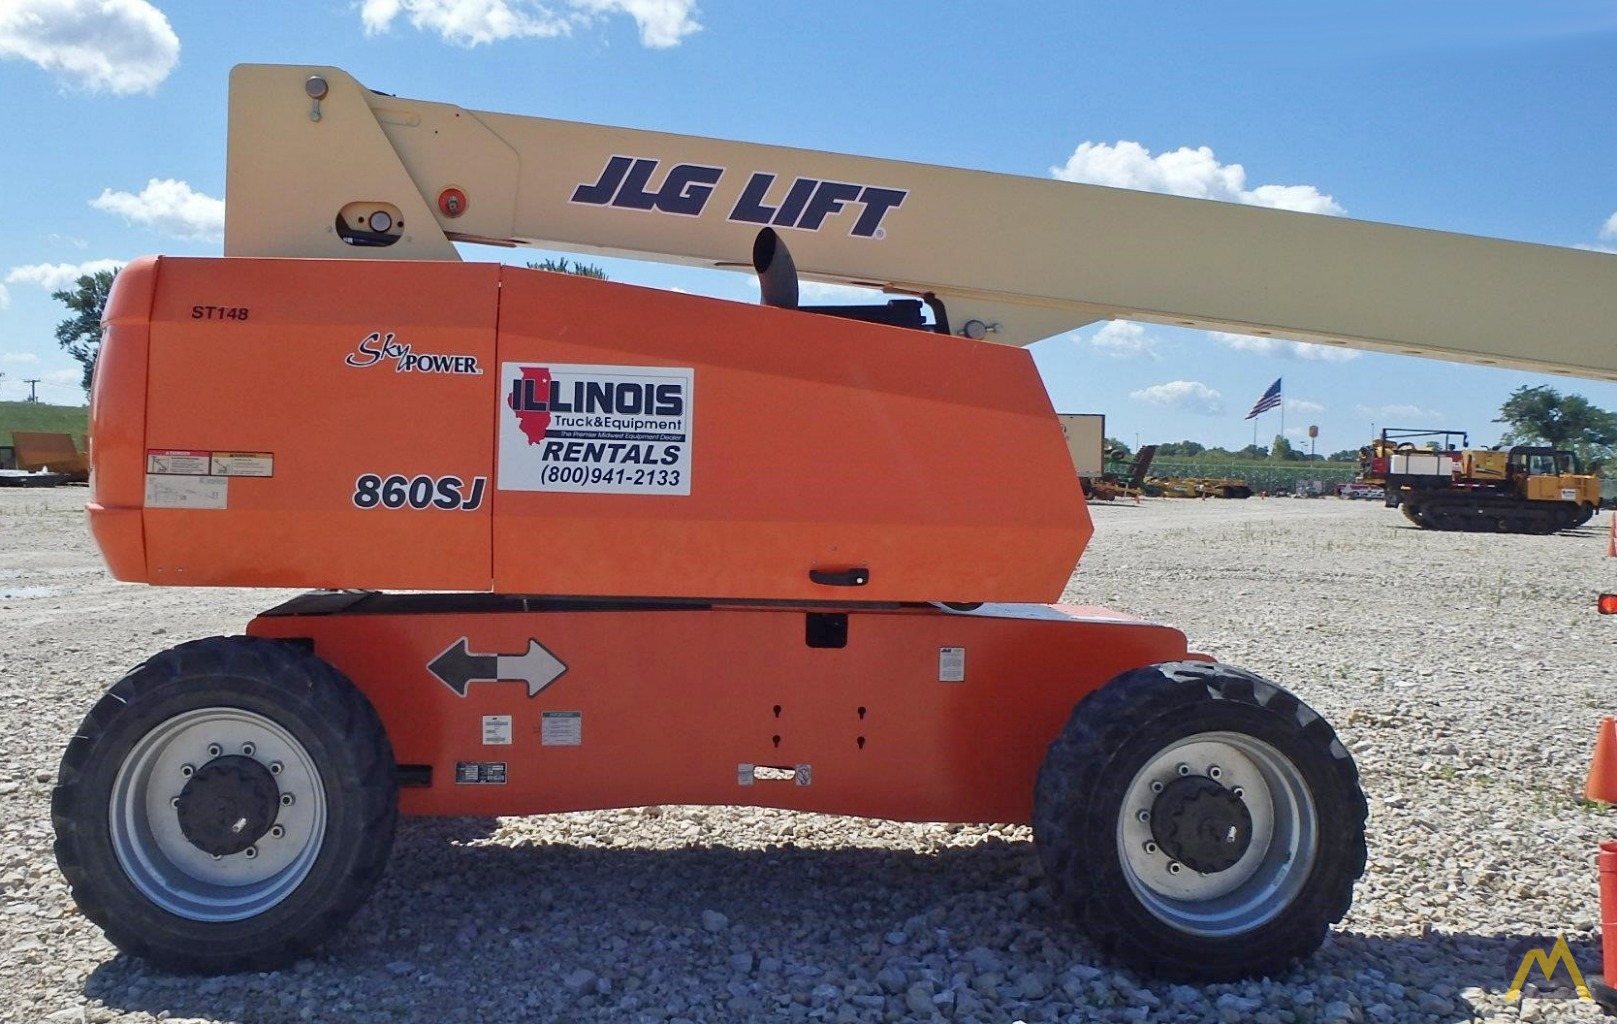 older 40 foot jlg boom lift for sale